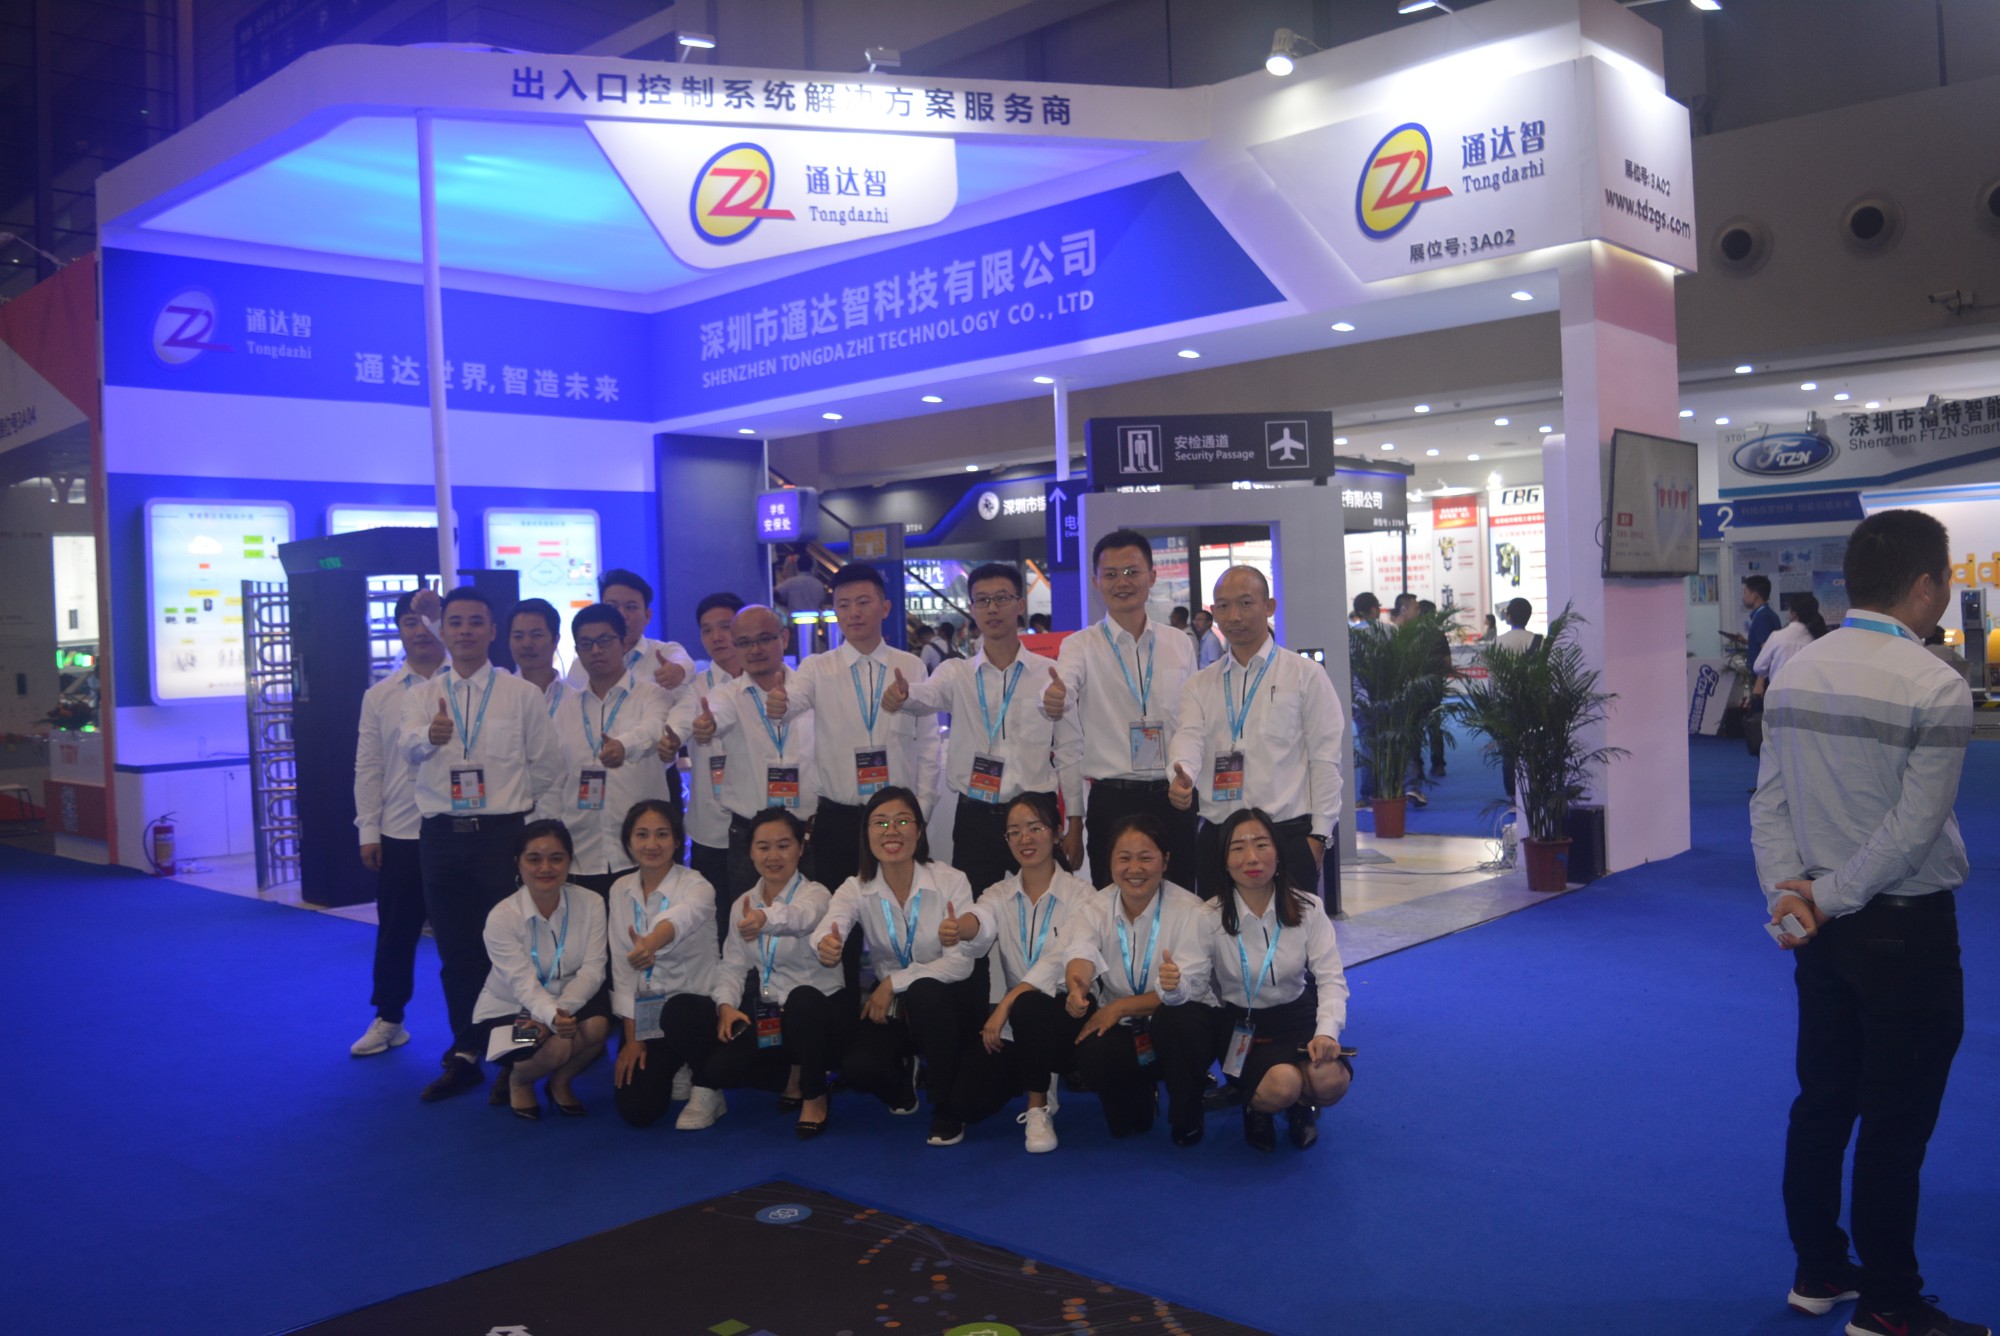 Shenzhen Tongdazhi Technology Co., Ltd.